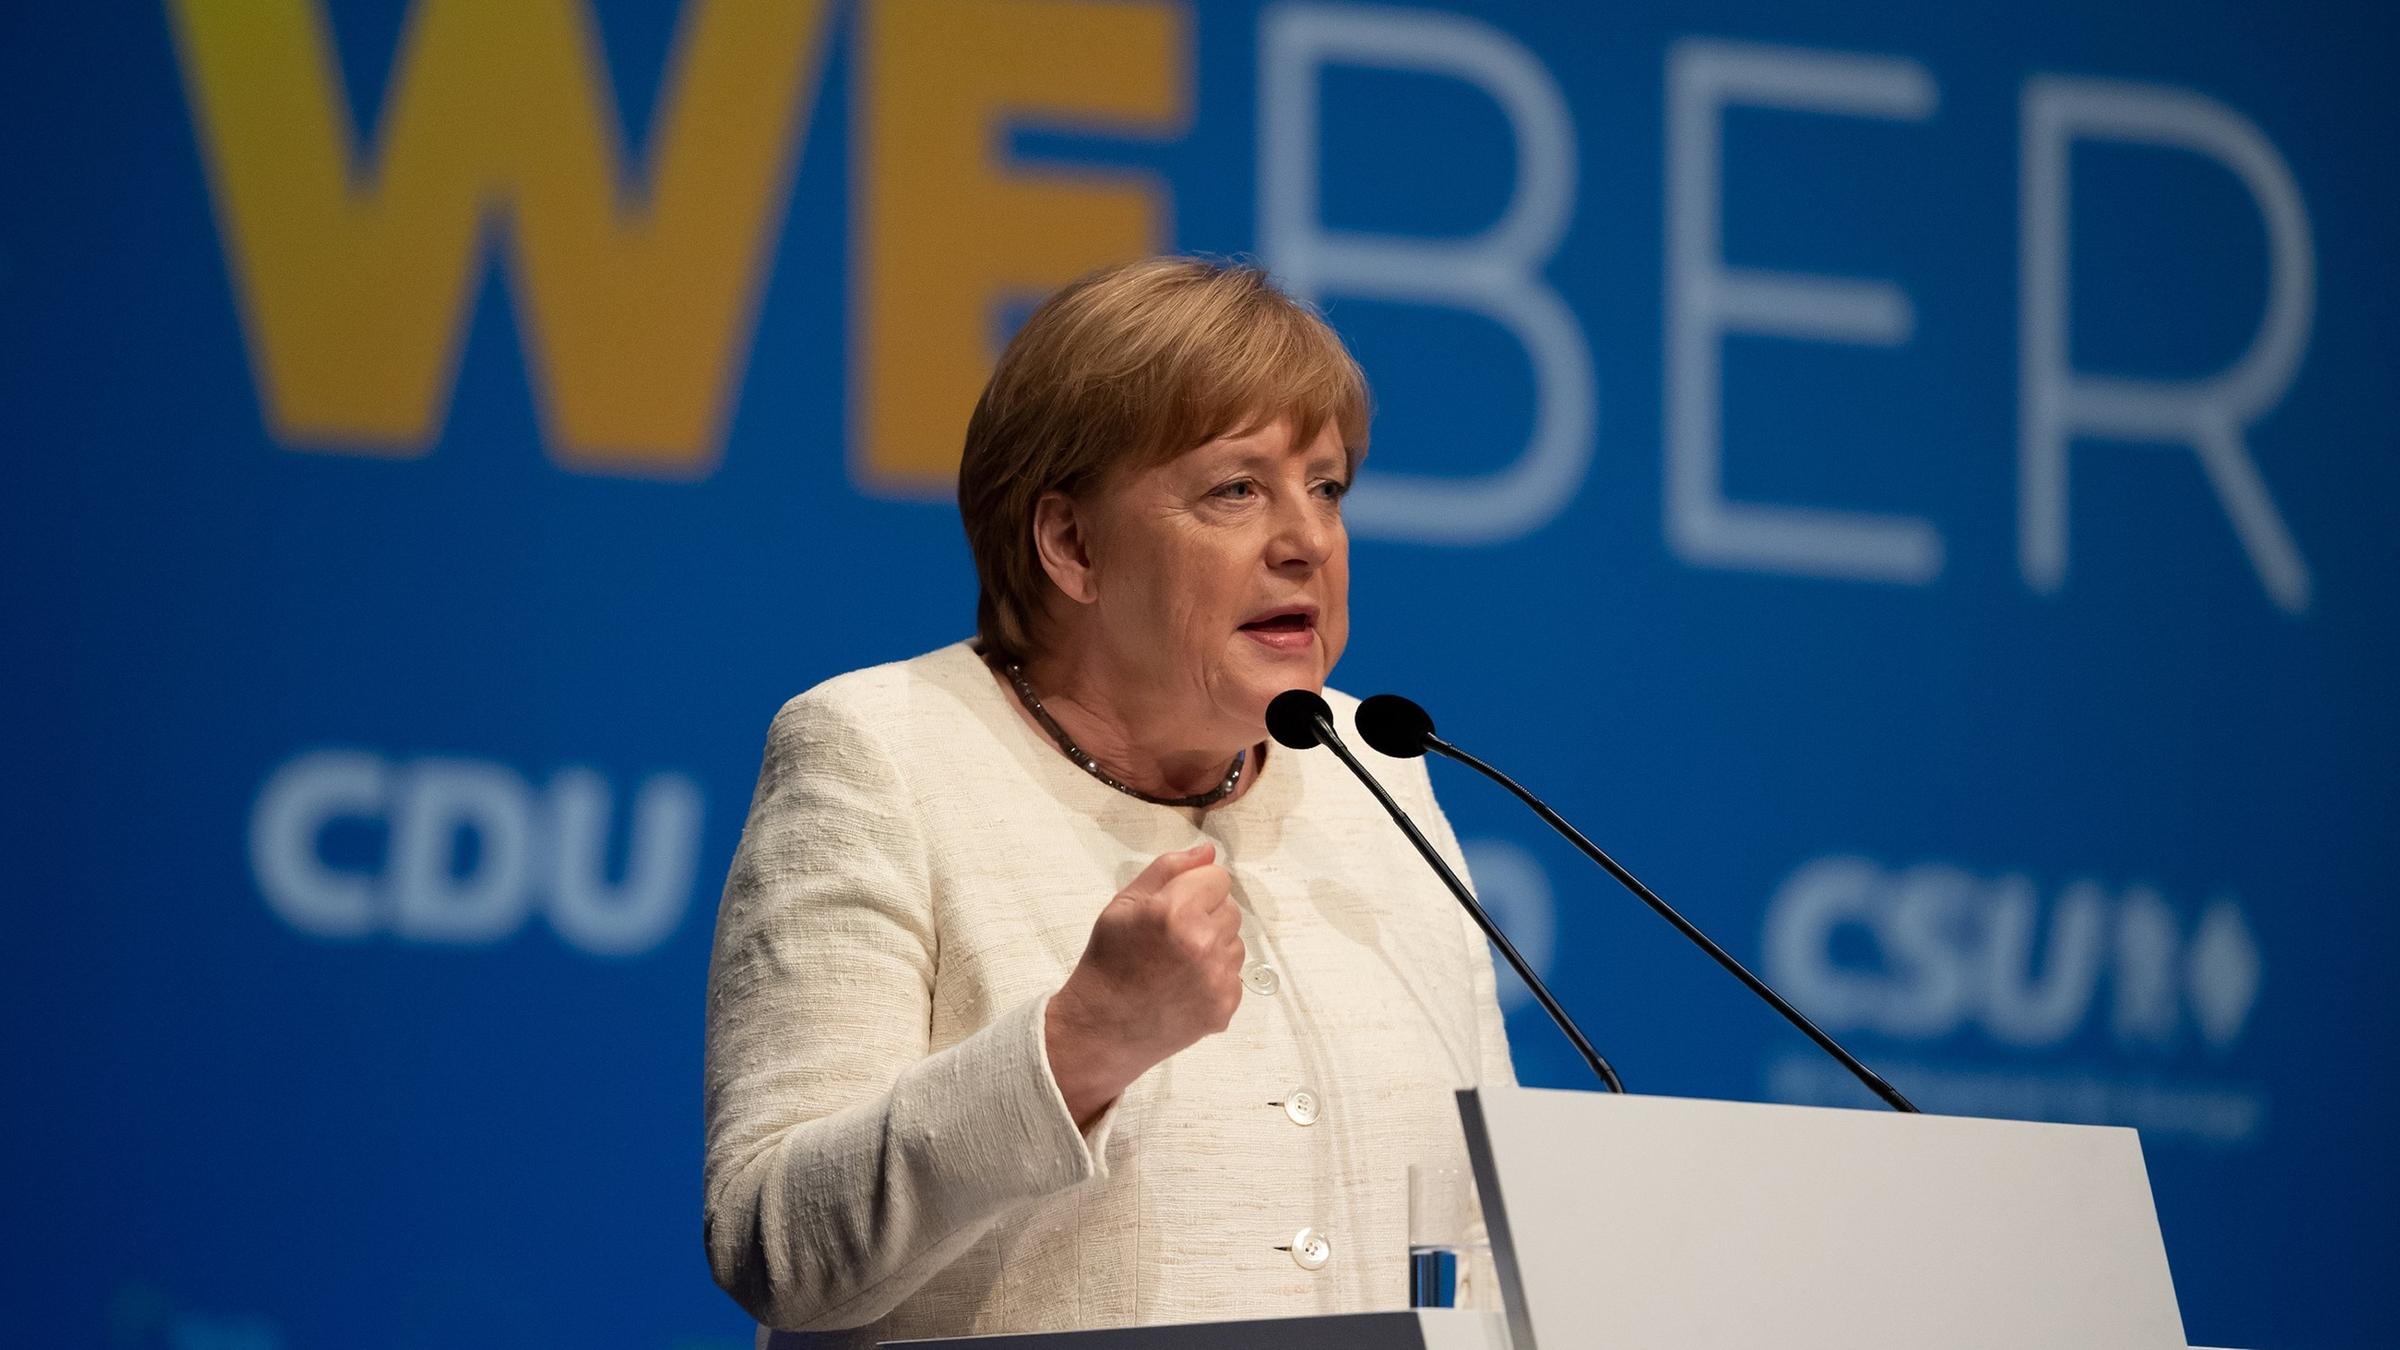 Personalien In Der Eu Angela Merkel Dringt Auf Schnelle Einigung Zdfheute